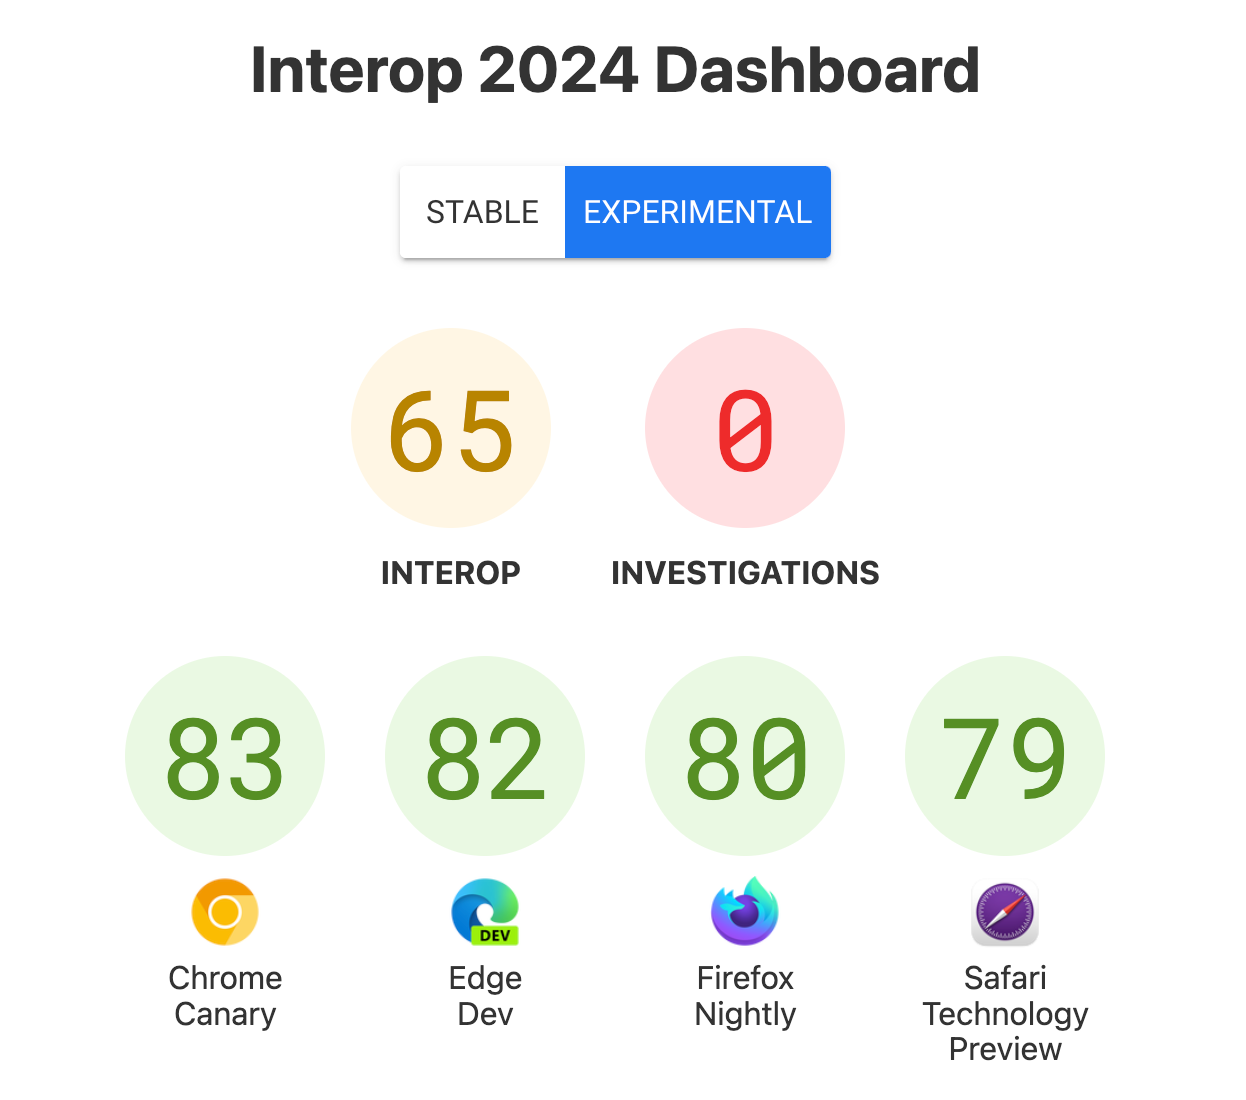 لقطة شاشة للوحة البيانات تعرض النتائج: التشغيل التفاعلي: 65، التحقيقات: 0، Chrome Canary: 83، Edge Dev: 82، Firefox Nightly: 80، Safari Technology Preview: 79.